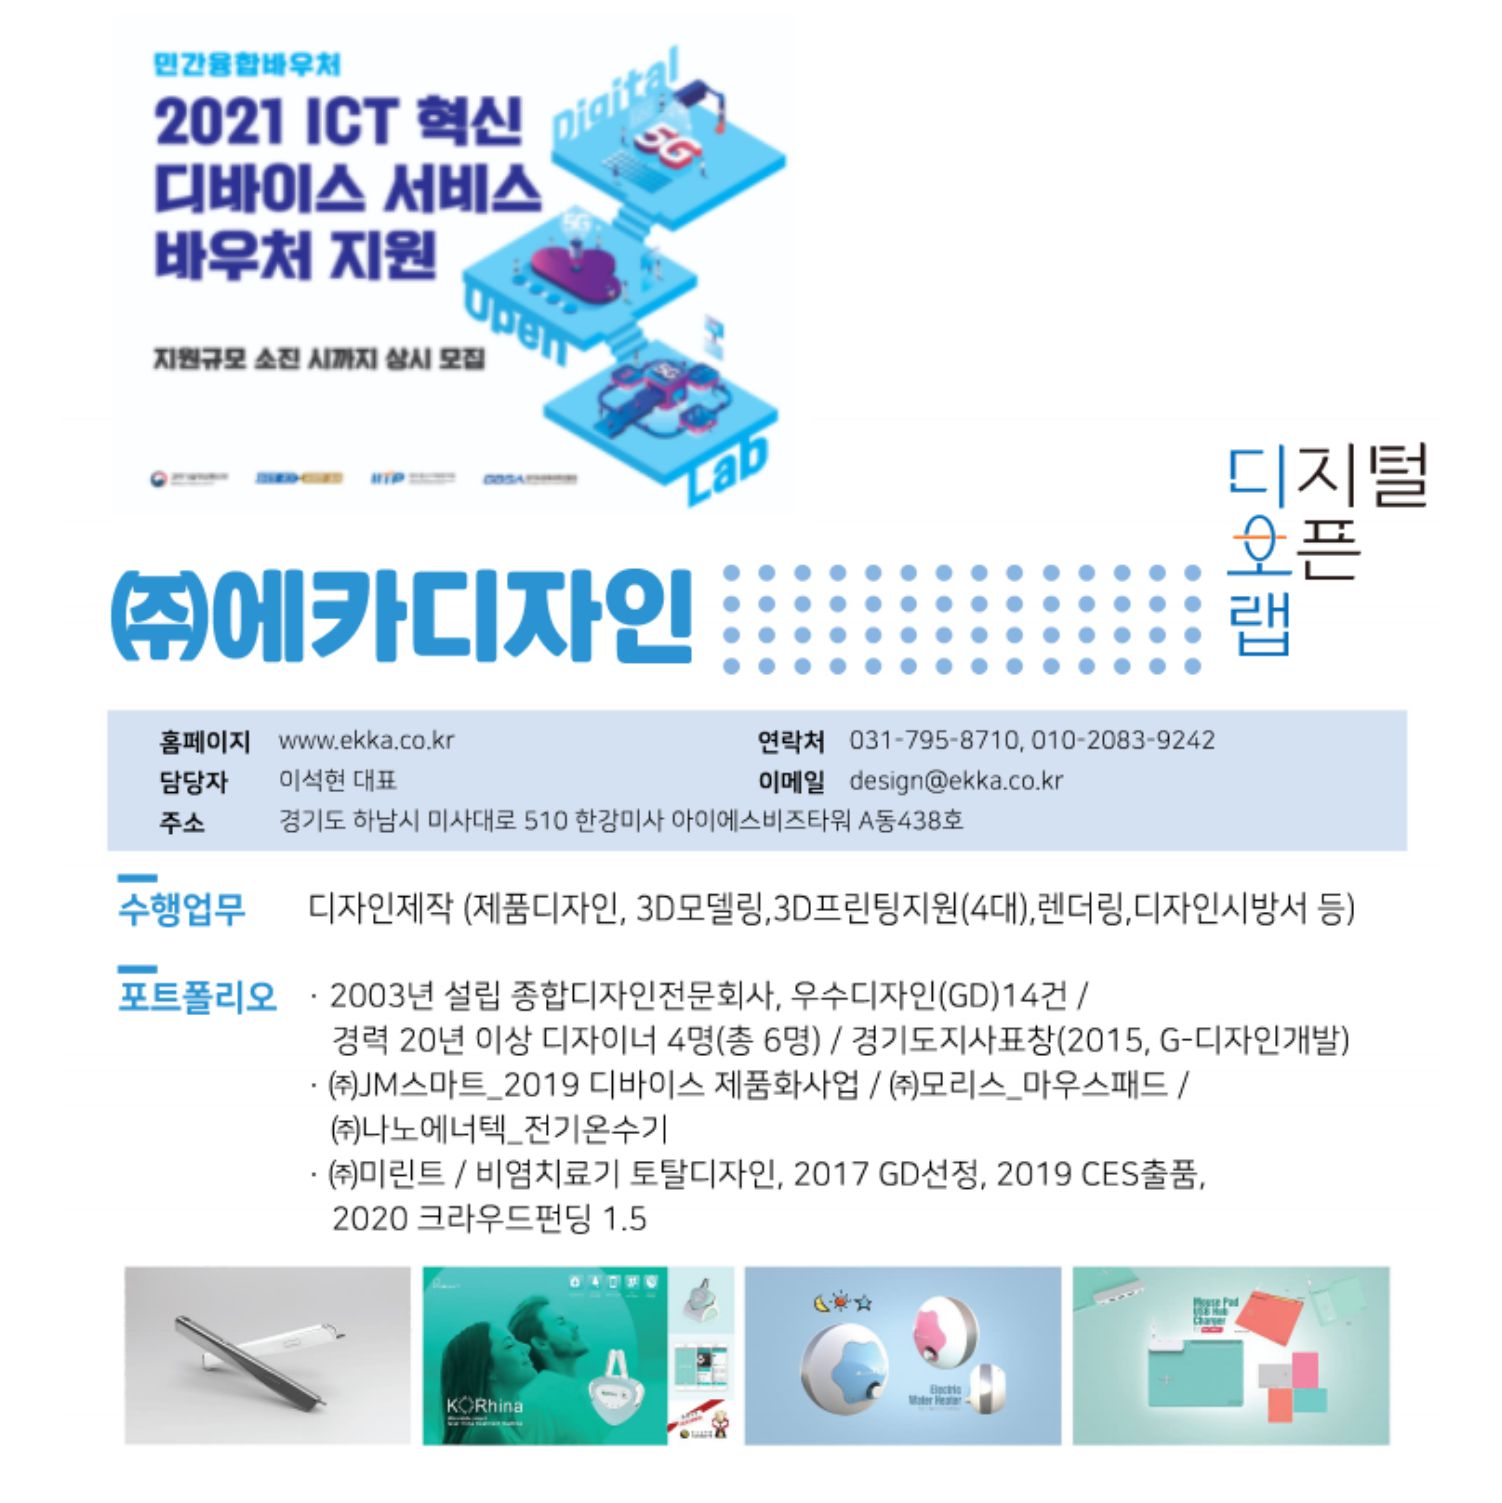 2021_ICT 혁신 디바이스 서비스 바우처 지원사업 수행사선정